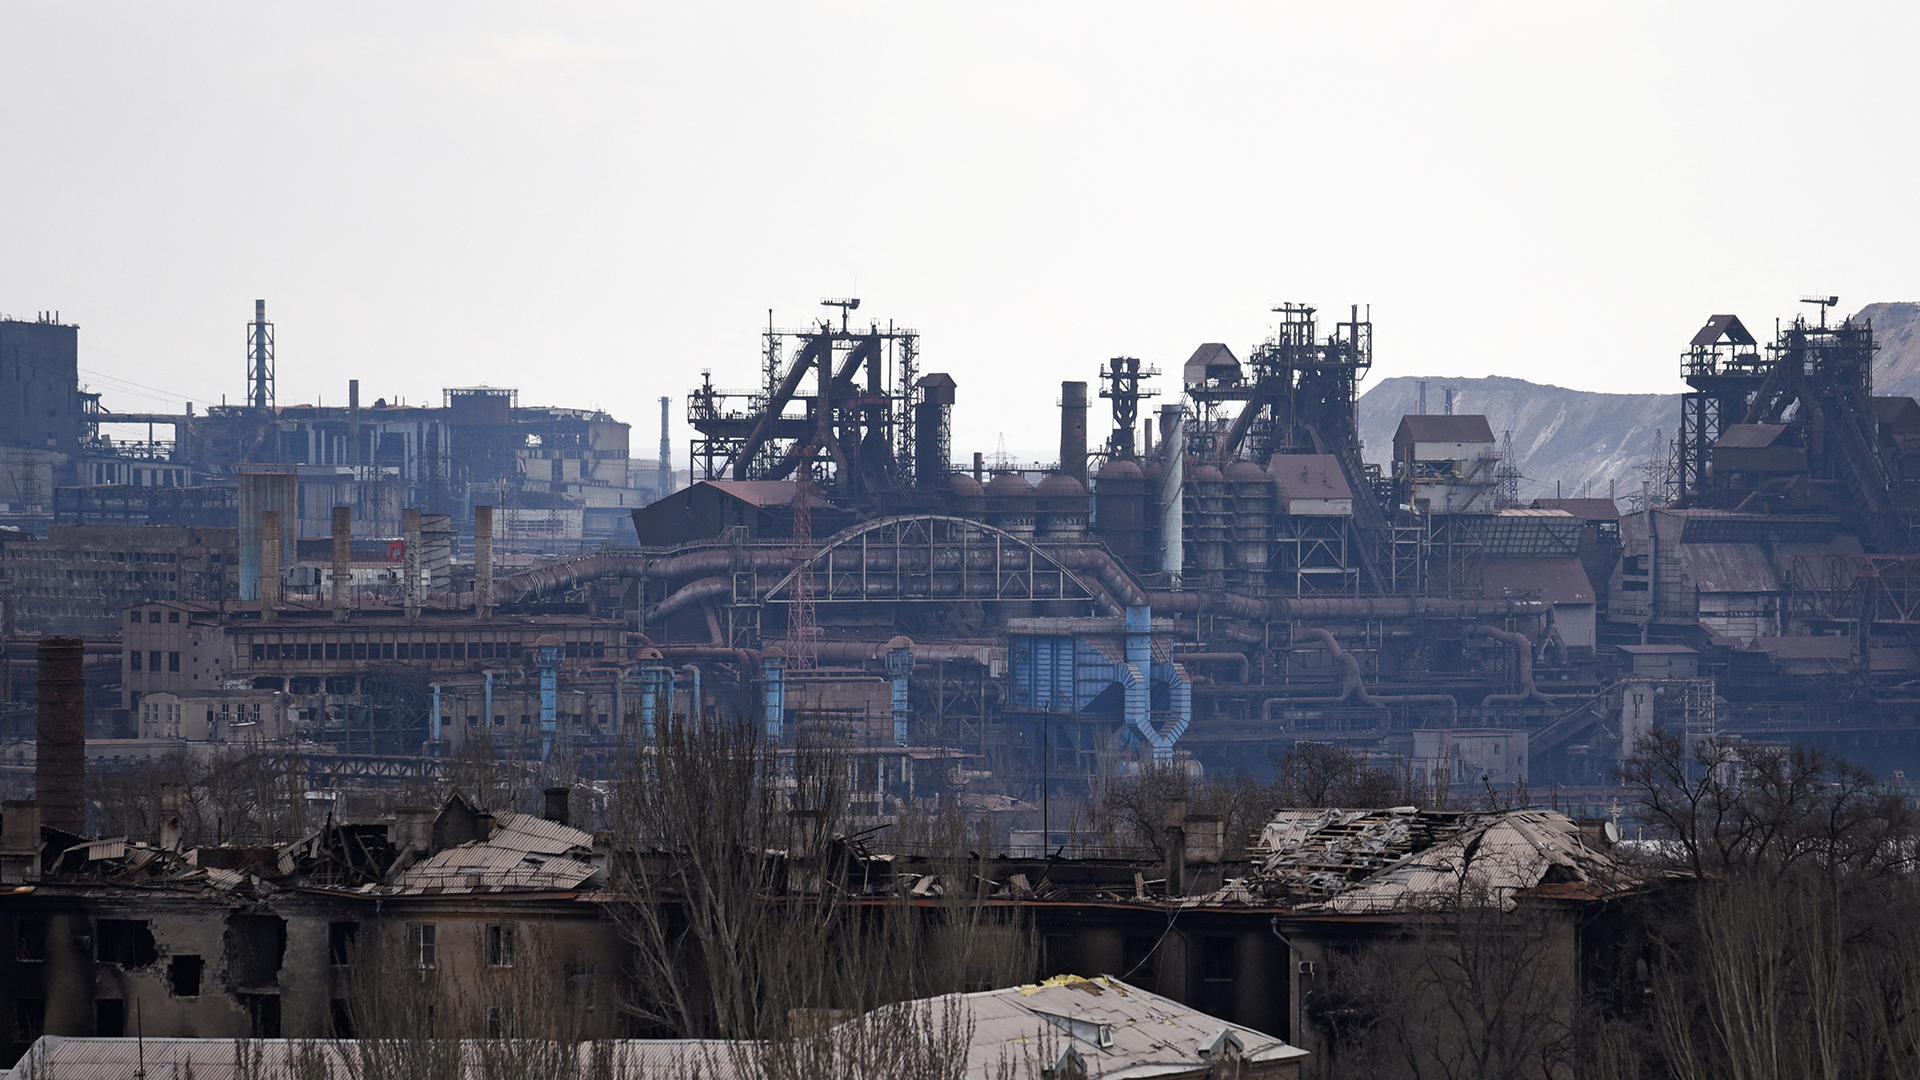 Das Werk des Unternehmens Azovstal hinter Gebäuden, die im Zuge des Ukraine-Russland-Konflikts in Mariupol, Ukraine, beschädigt wurden. | REUTERS